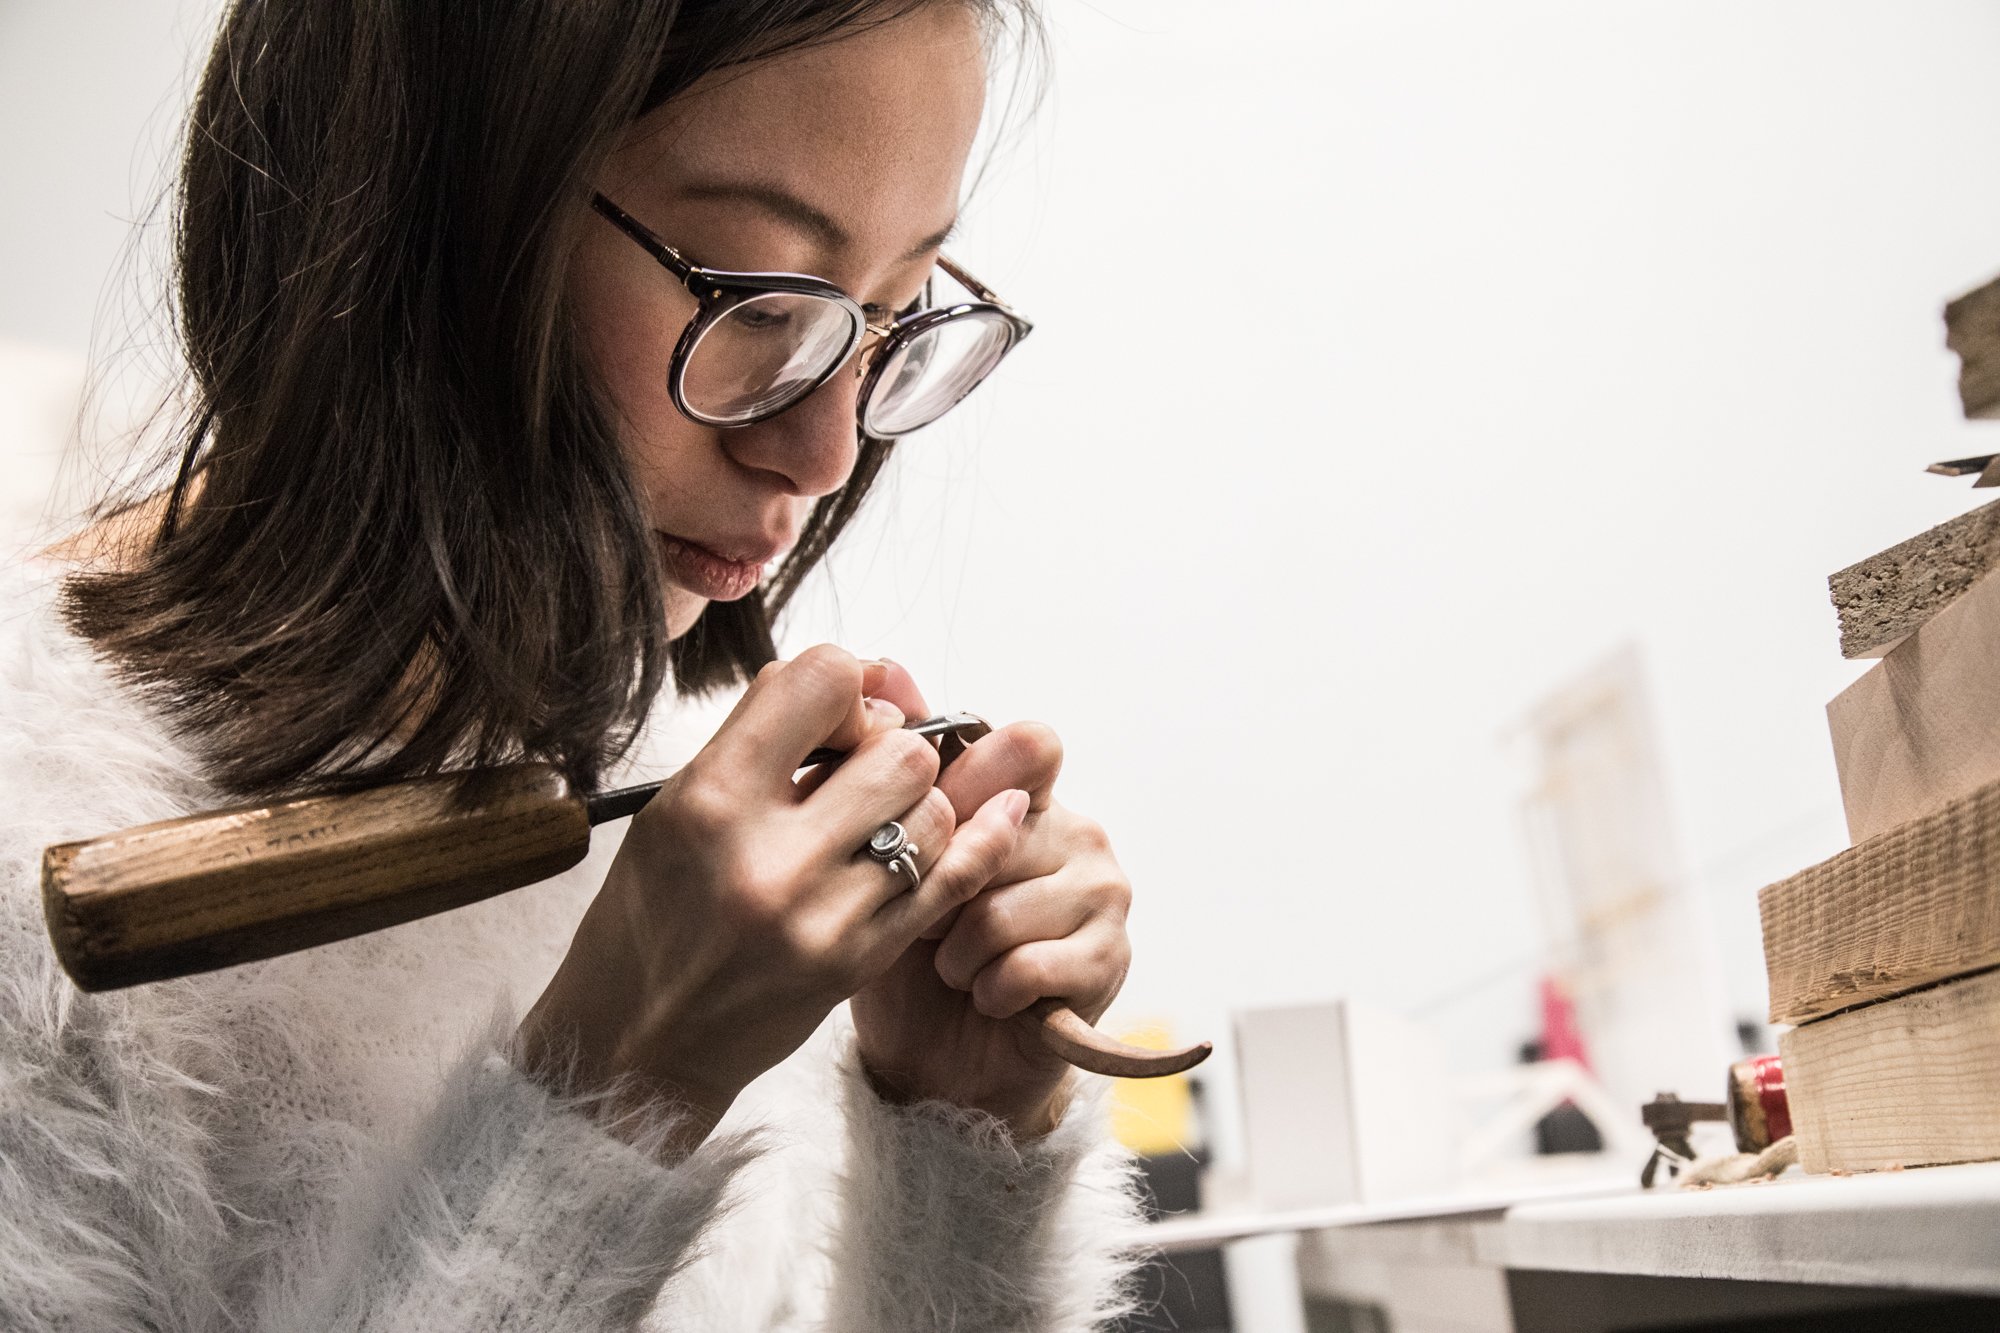  Atelier de Sculpture de l’École Boulle. 25 janvier 2018. Mathilde sculptant une aiguille.  